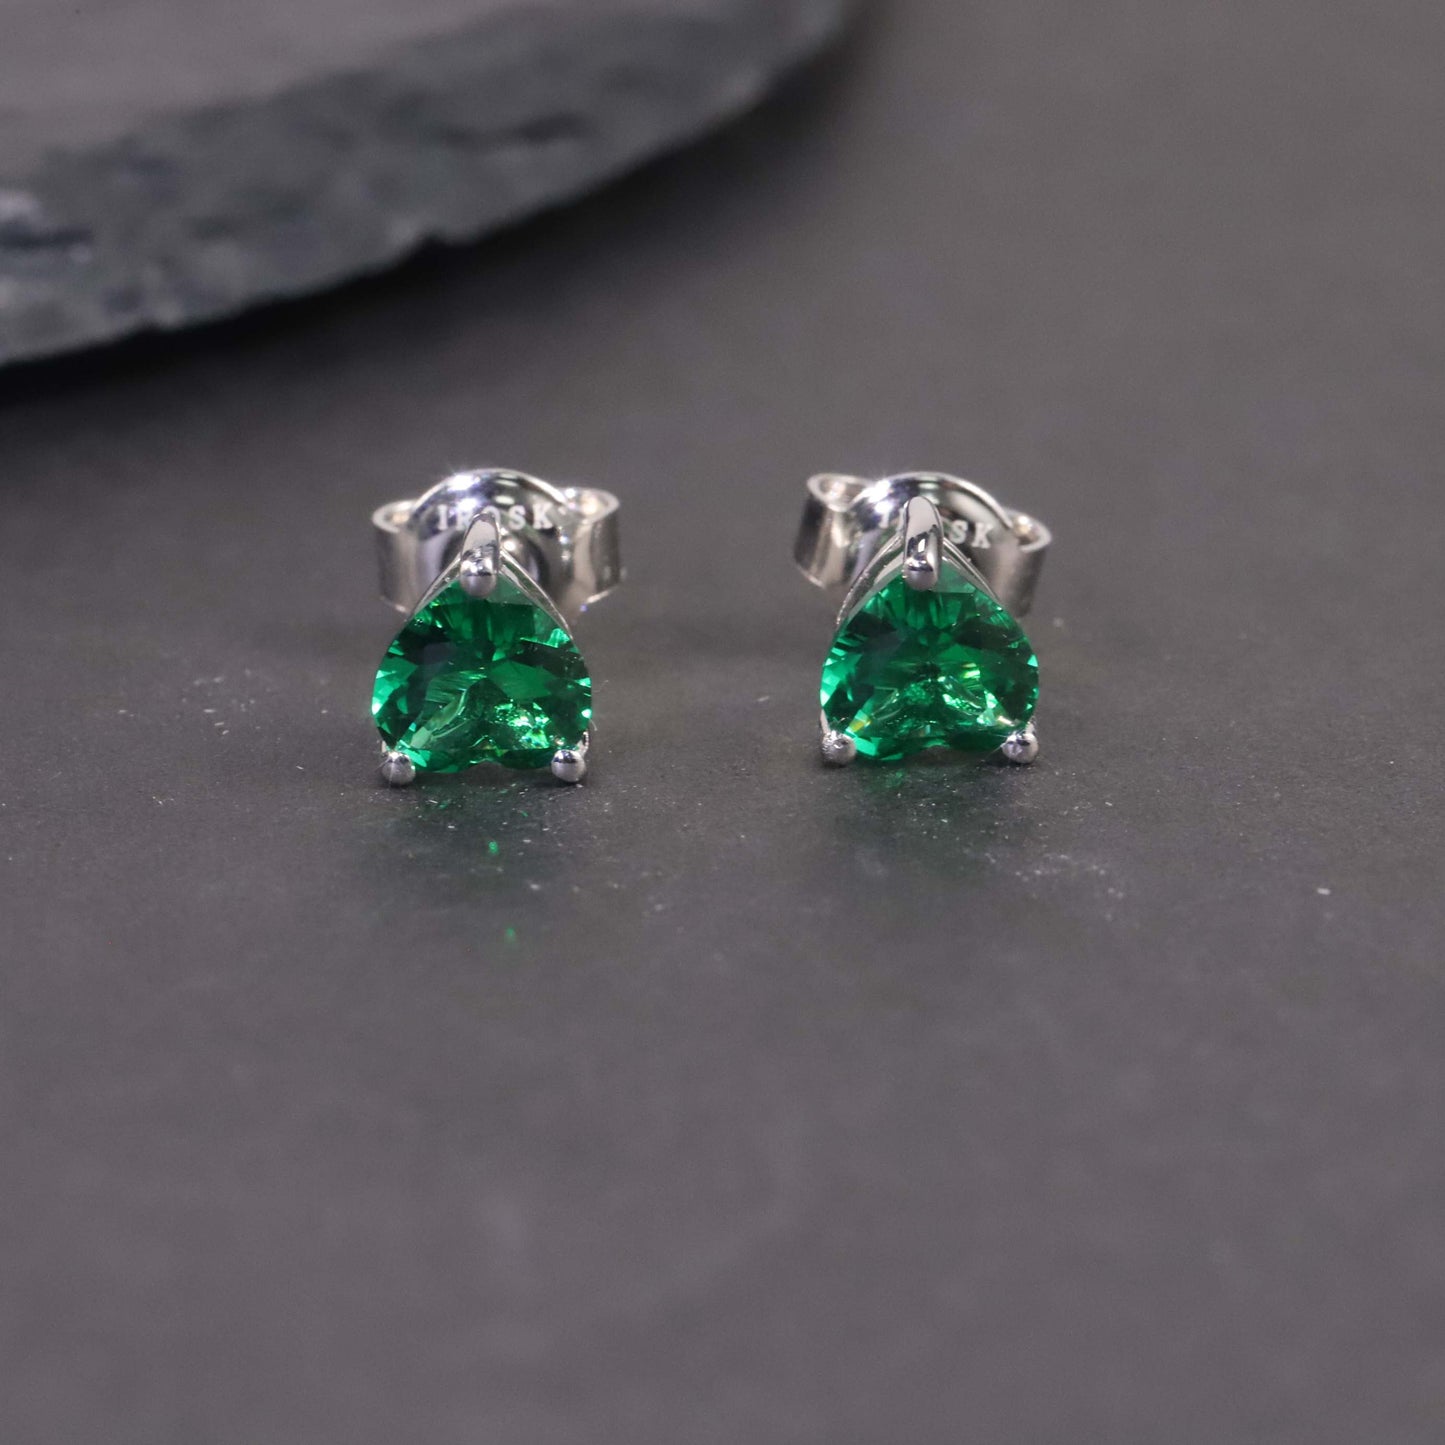 Heart Shape Stud Earrings in Sterling Silver -  Emerald